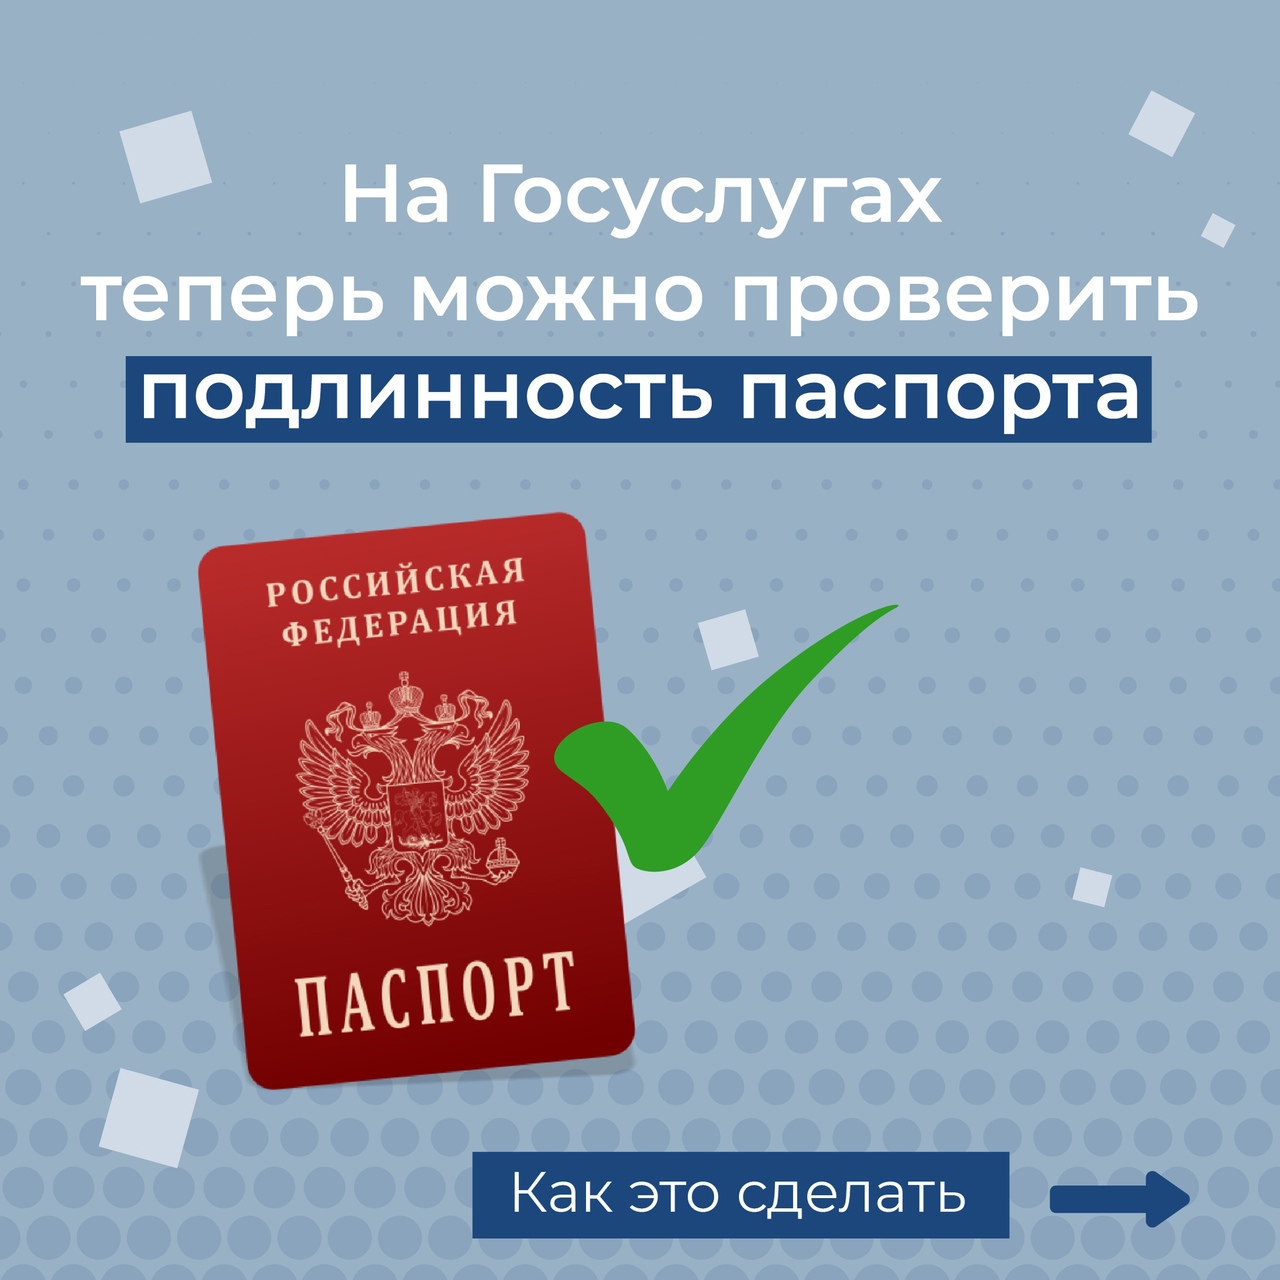 Проверить подлинность паспорта перед сделкой?